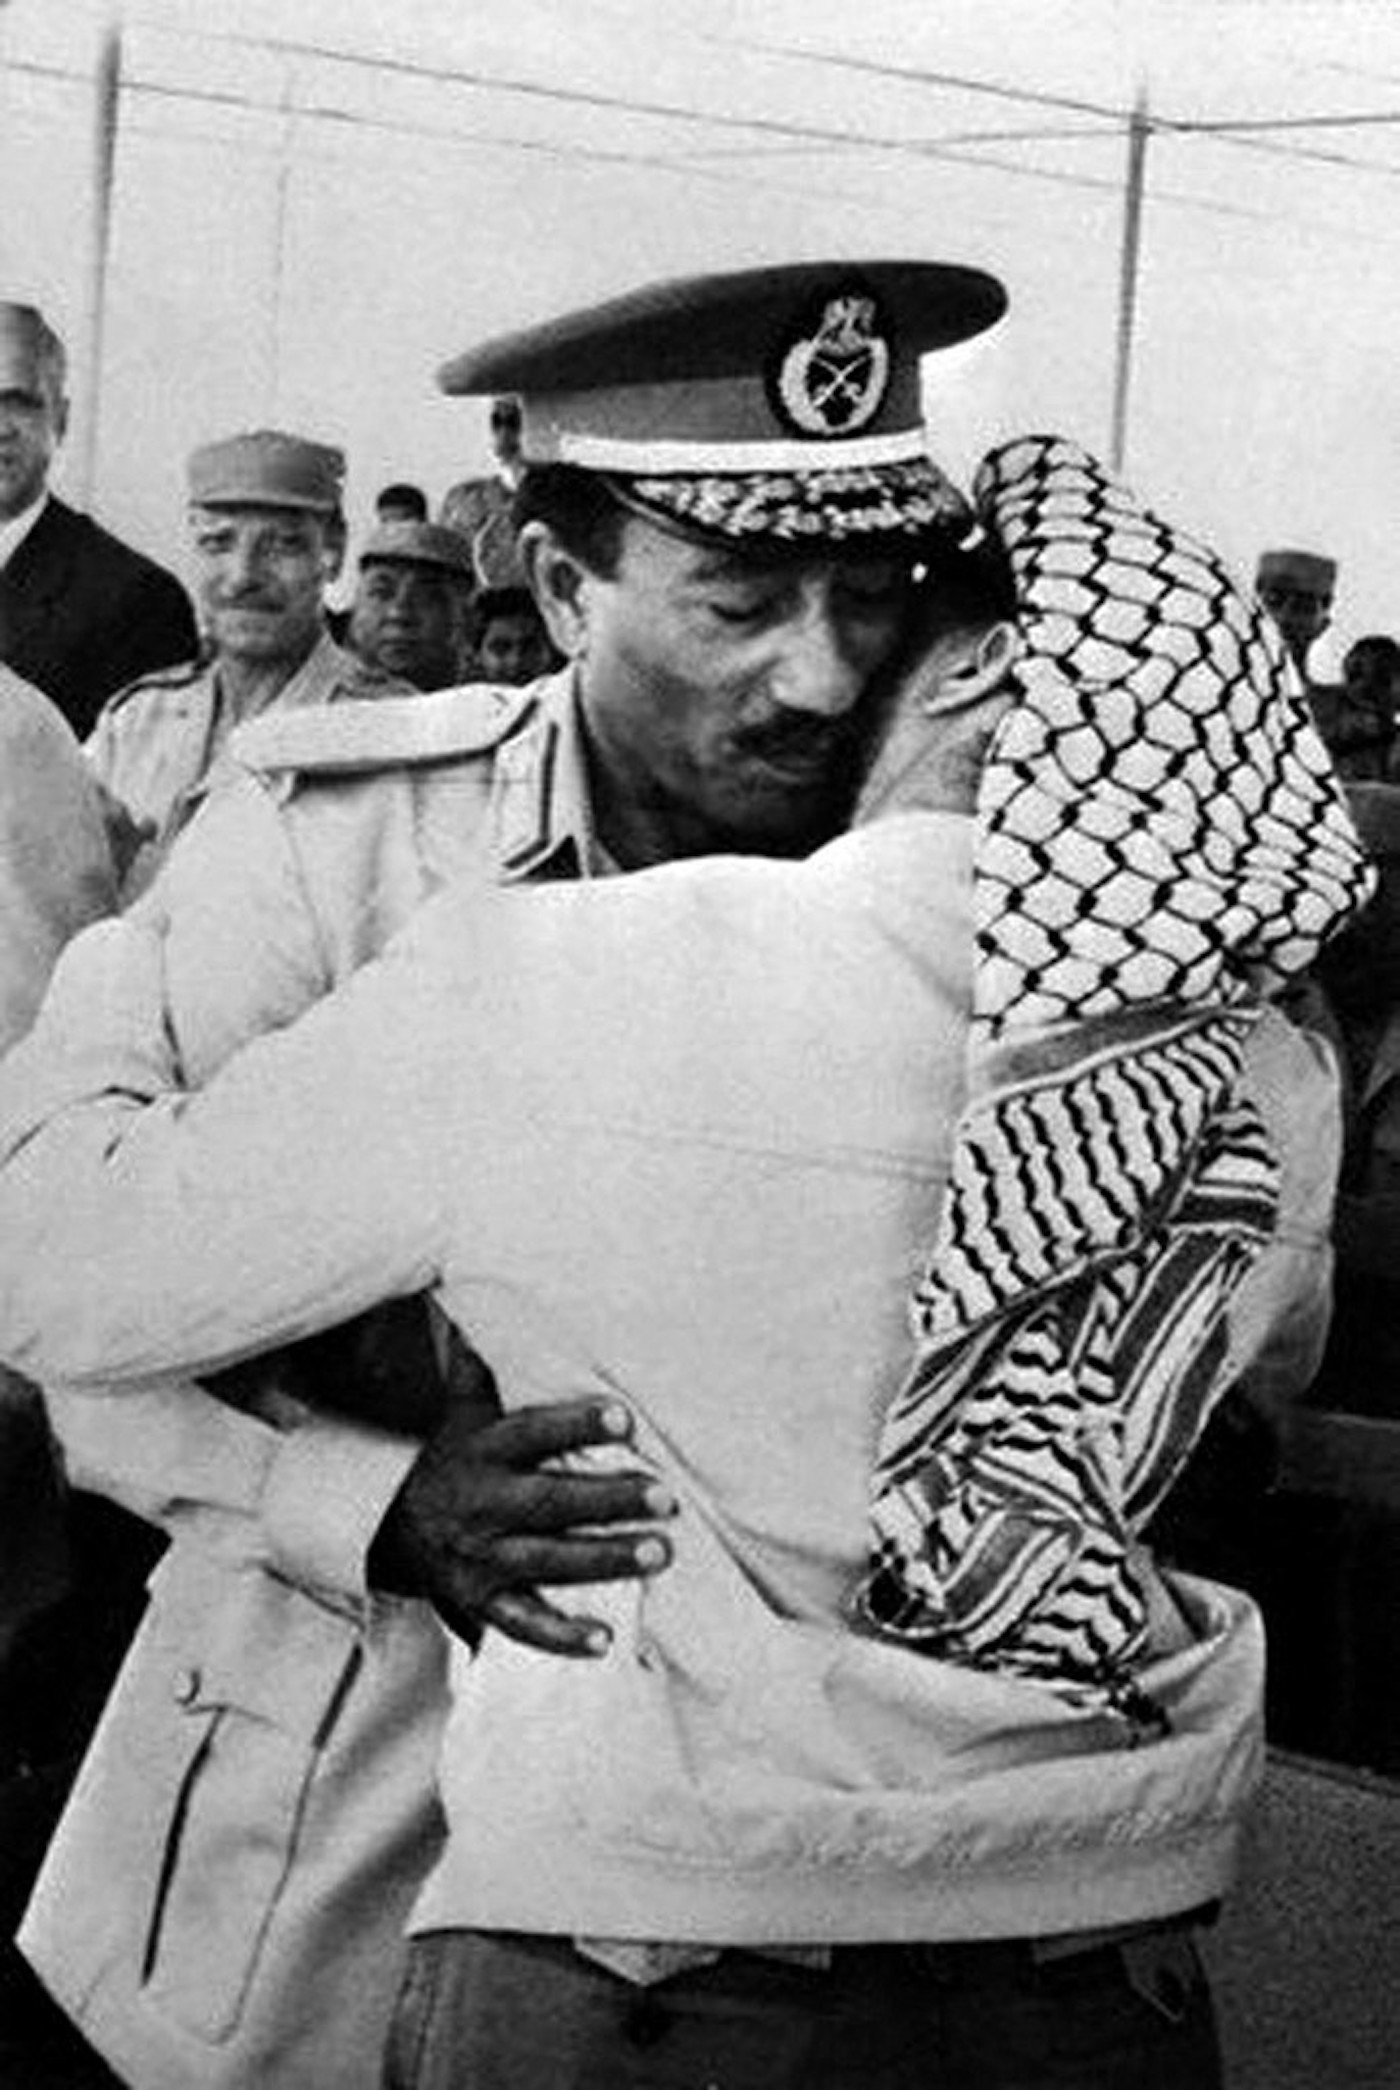 Lors d’un défilé militaire organisé le 6 juin 1974 à Ismaïlia à l’occasion du septième anniversaire de la guerre des Six Jours, Anouar al-Sadate embrasse le leader palestinien Yasser Arafat. Cette image est tirée des archives de l’Autorité palestinienne. (AFP)